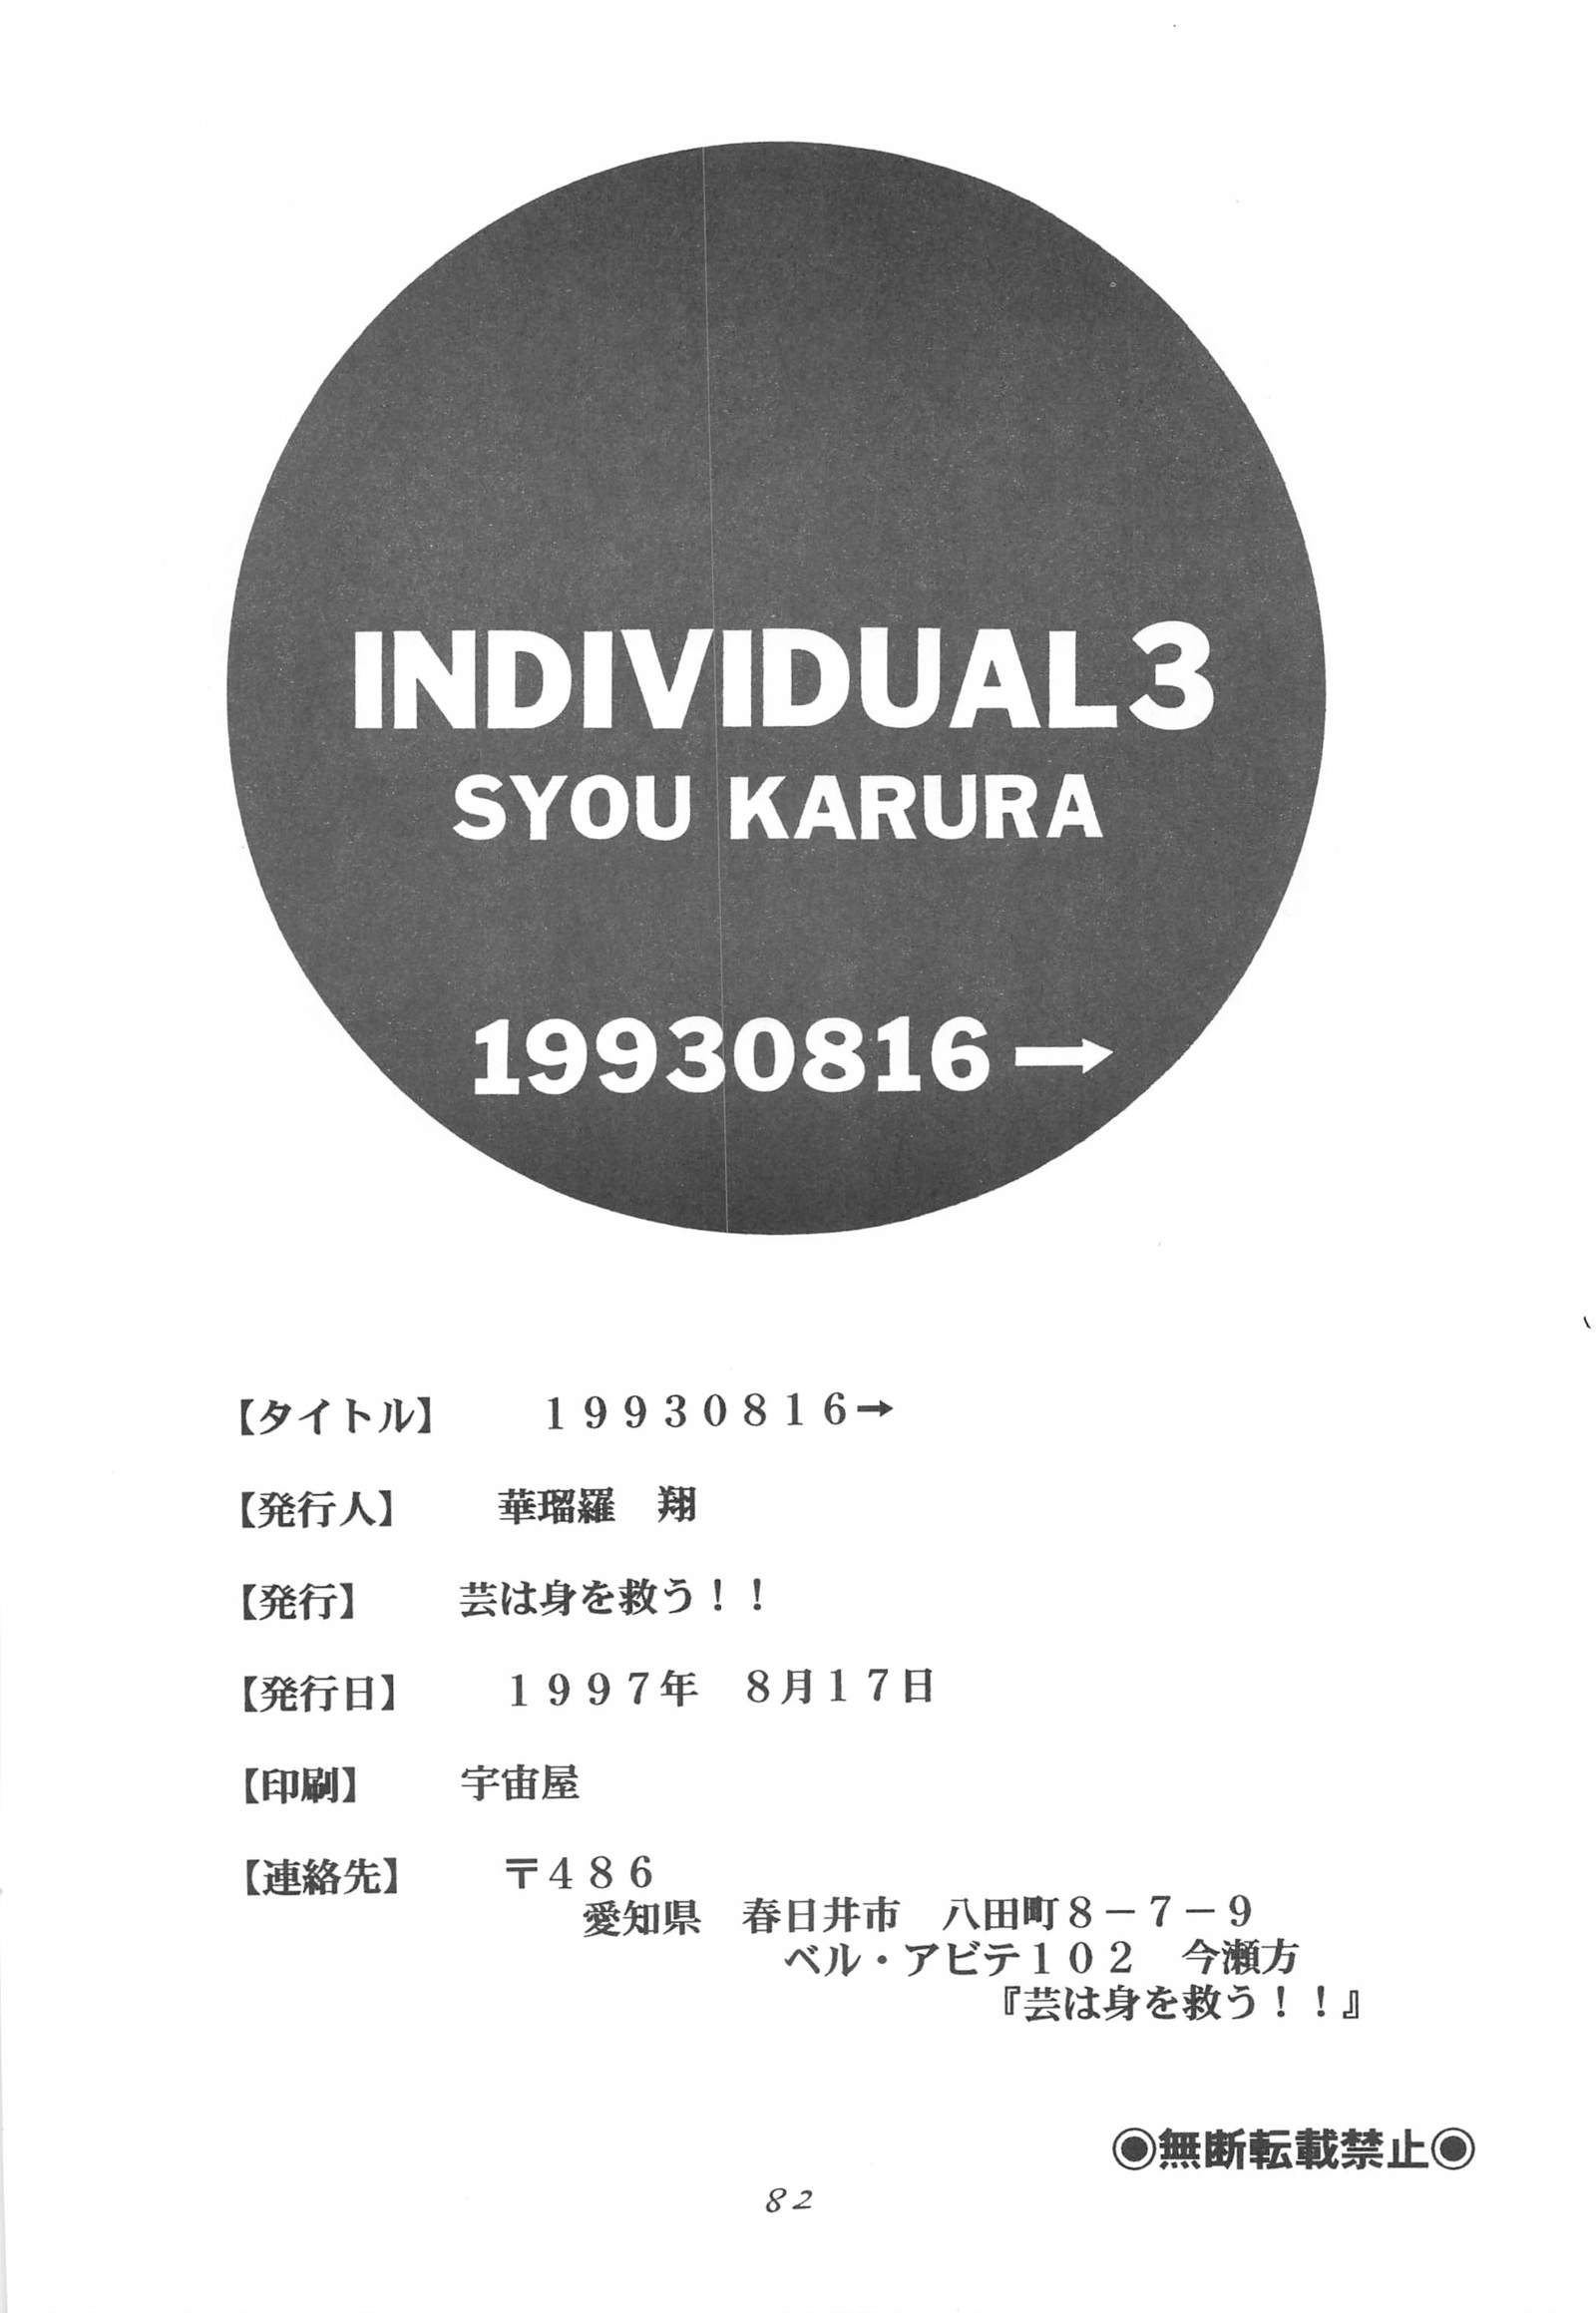 個人3-19930816→